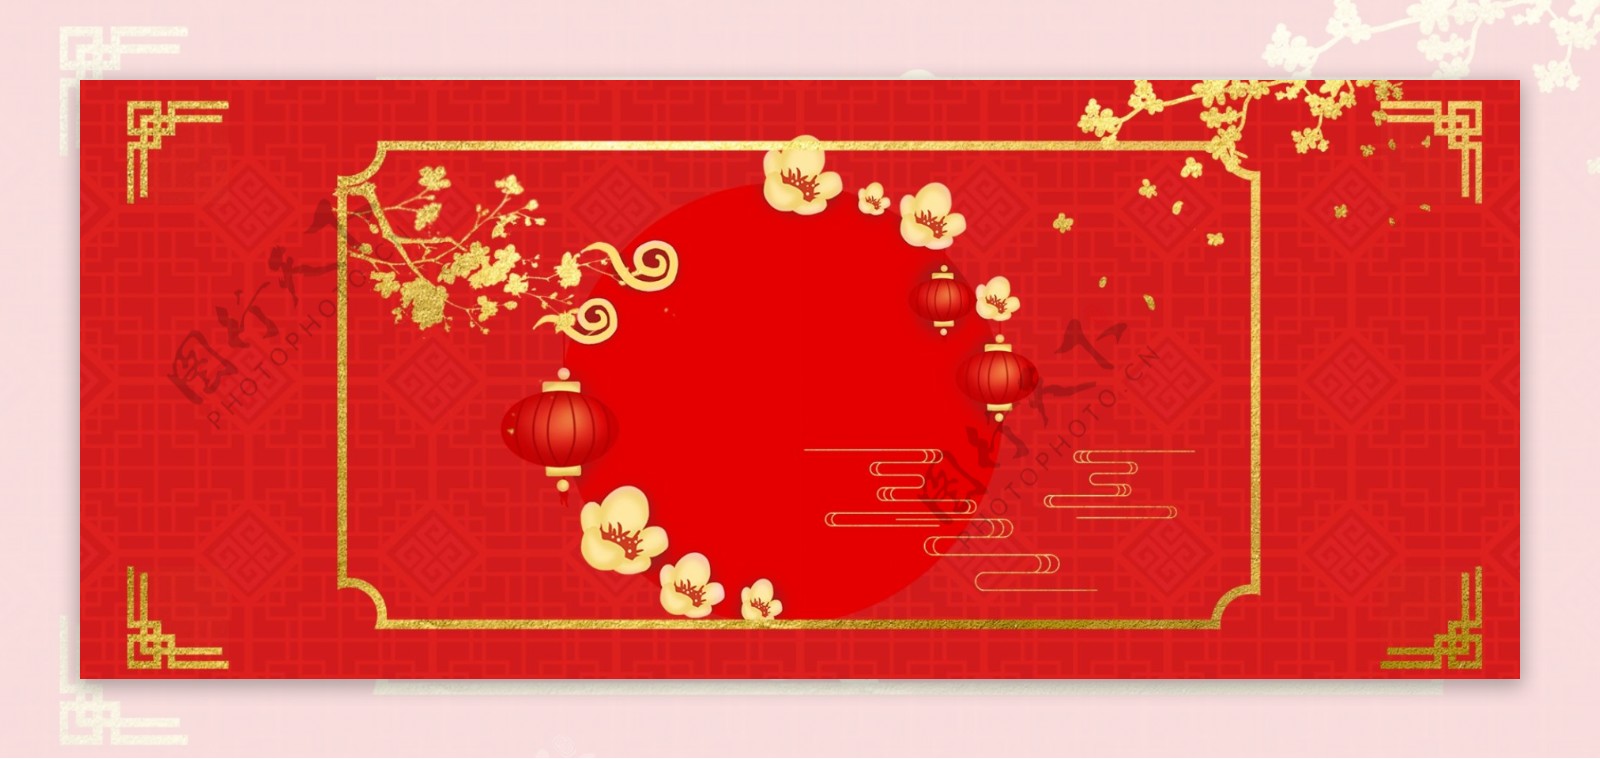 喜庆大气猪年中国风红色烫金背景